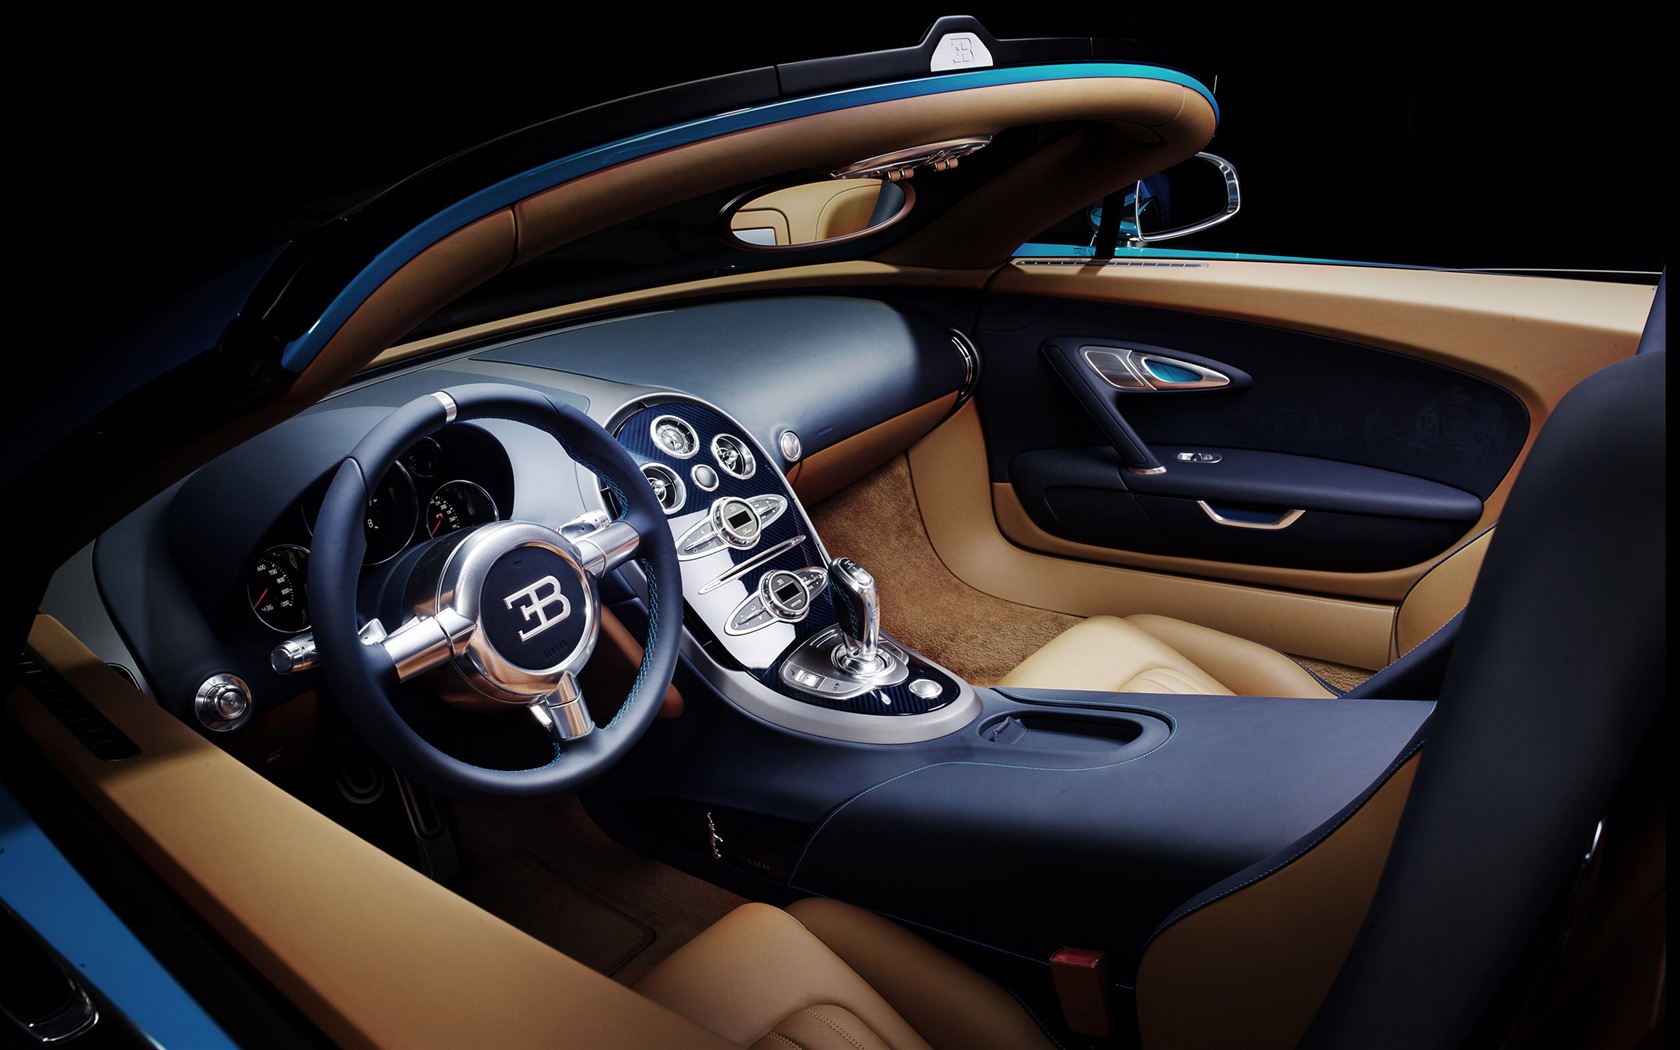 2013 Bugatti Veyron 16.4 Grand Sport Vitesse supercar fondos de pantalla de alta definición #7 - 1680x1050